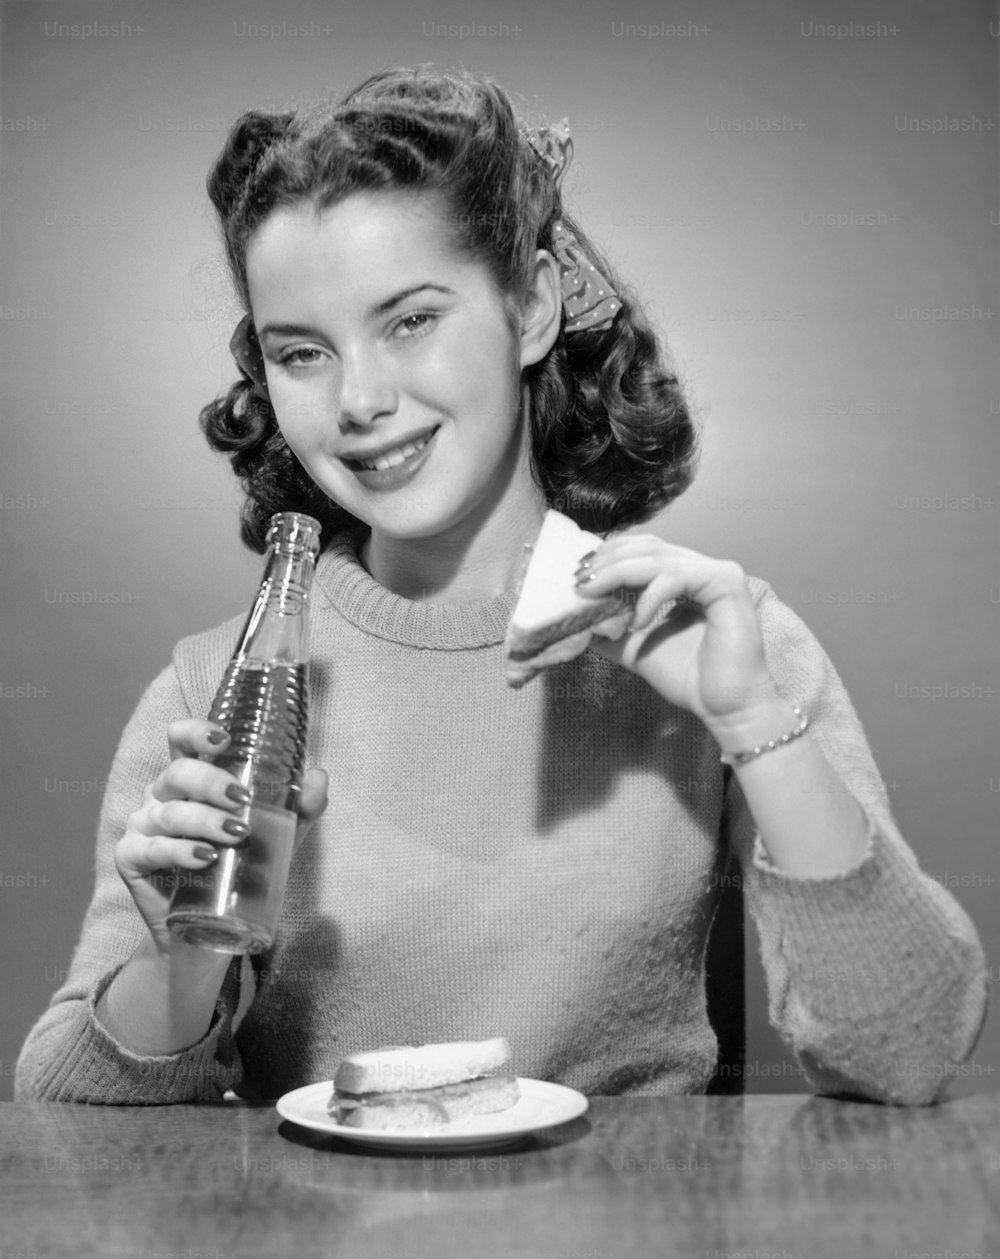 미국 - 1950년대경: 탄산음료와 샌드위치를 먹고 있는 십대 소녀.